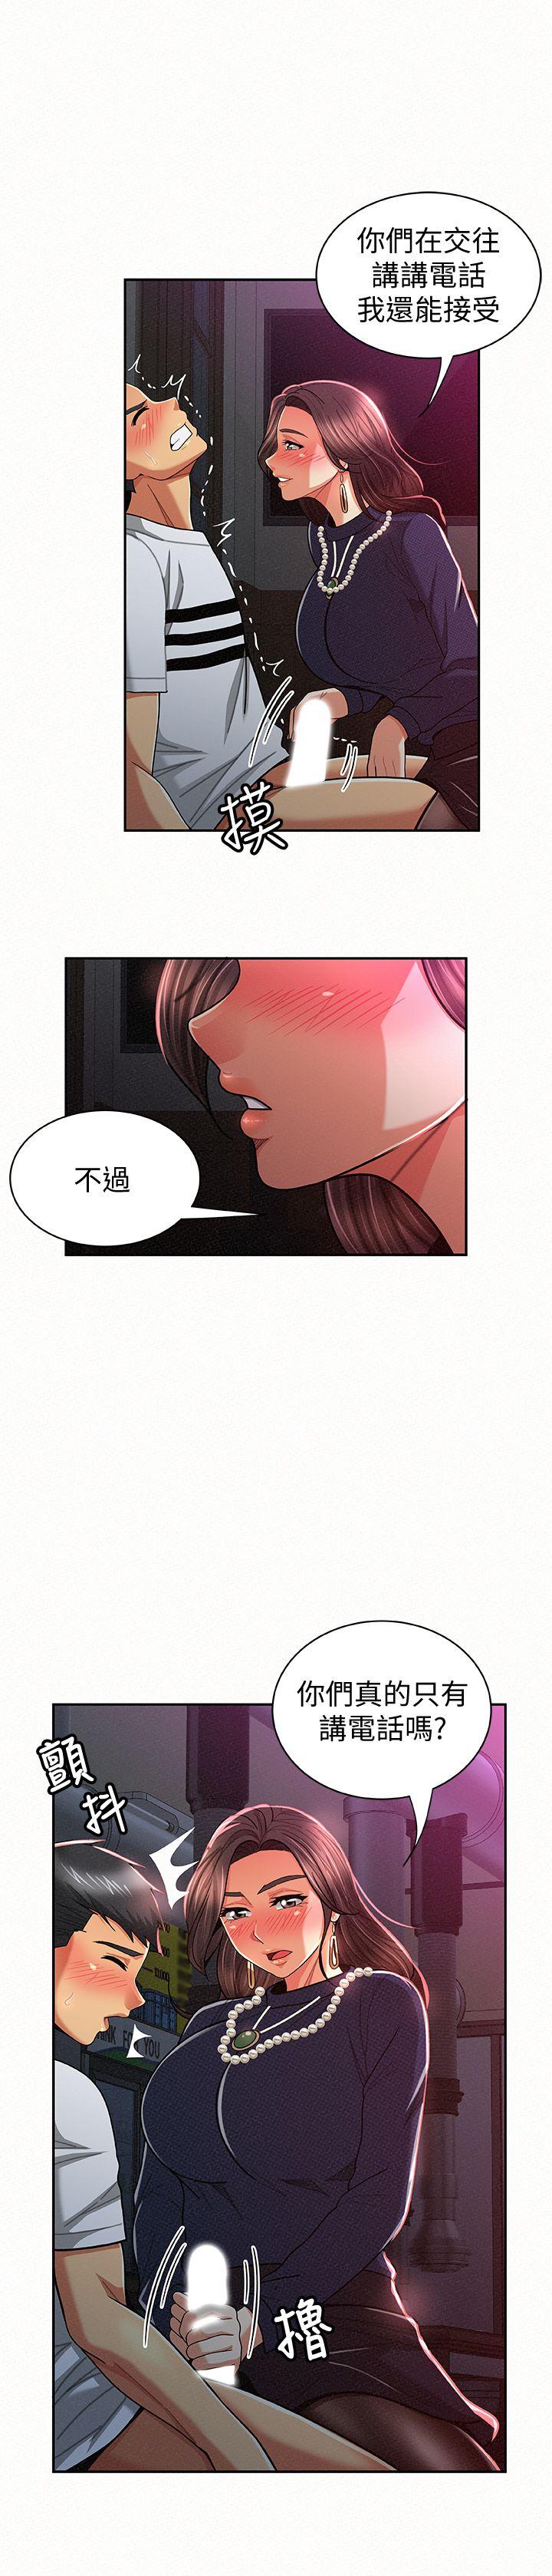 韩国污漫画 報告夫人 第20话-你跟仁惠进展到哪里了? 4